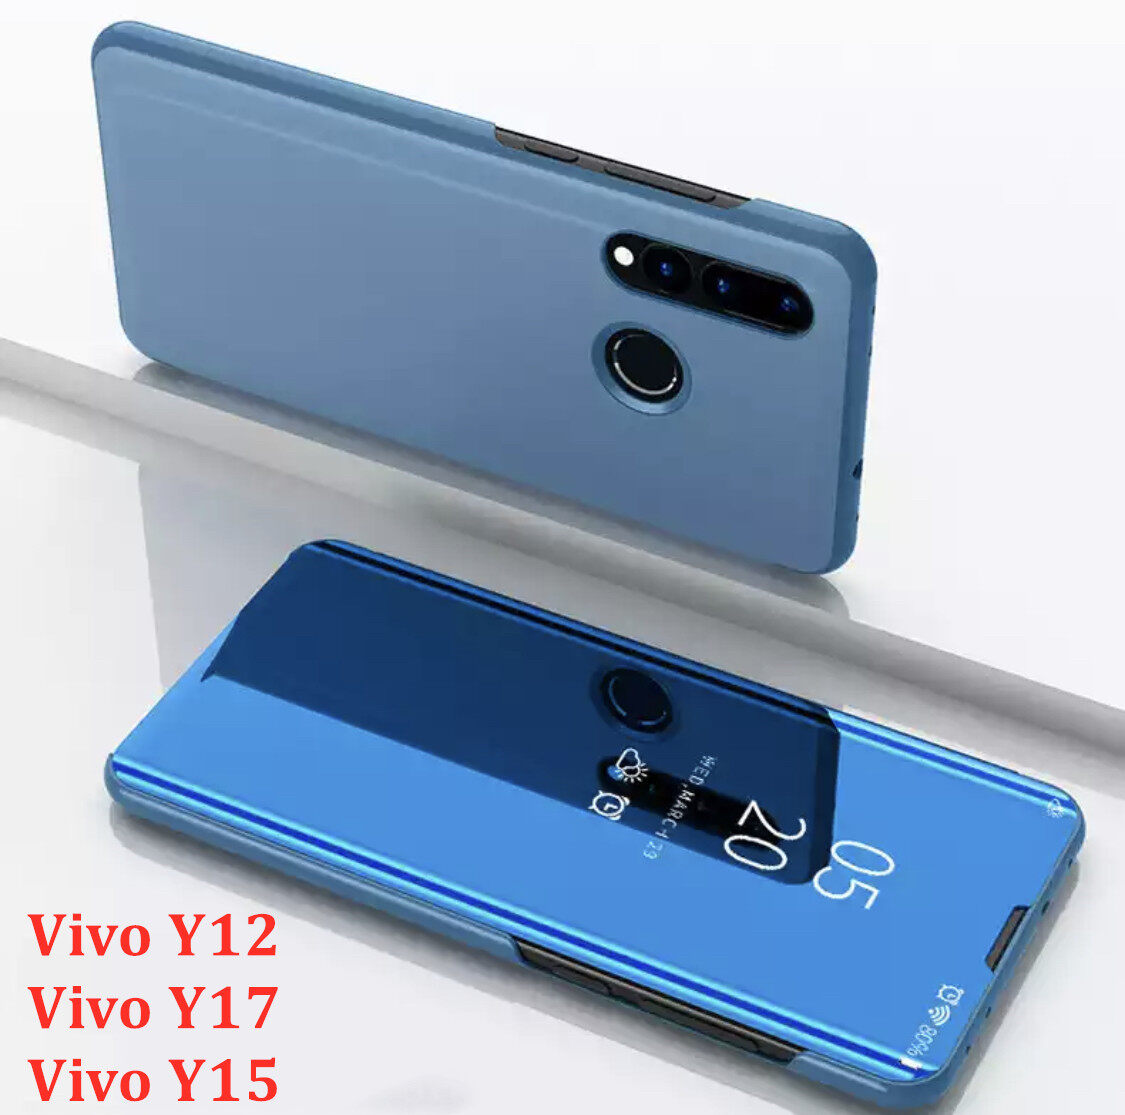 [ส่งจากไทย] Case Vivo Y17 เคสเปิดปิดเงา สำหรับรุ่น Vivo Y17 ฝาพับ กระเป๋า vivo วาย17 Smart Case เคสวีโว่ Y17 เคสฝาเปิดปิดเงา สมาร์ทเคส เคสตั้งได้ Vivo Y17 Flip Mirror Leather Case With Stand Holder เคสมือถือ เคสโทรศัพท์ รับประกันความพอใจ สี น้ำเงินเข้ม